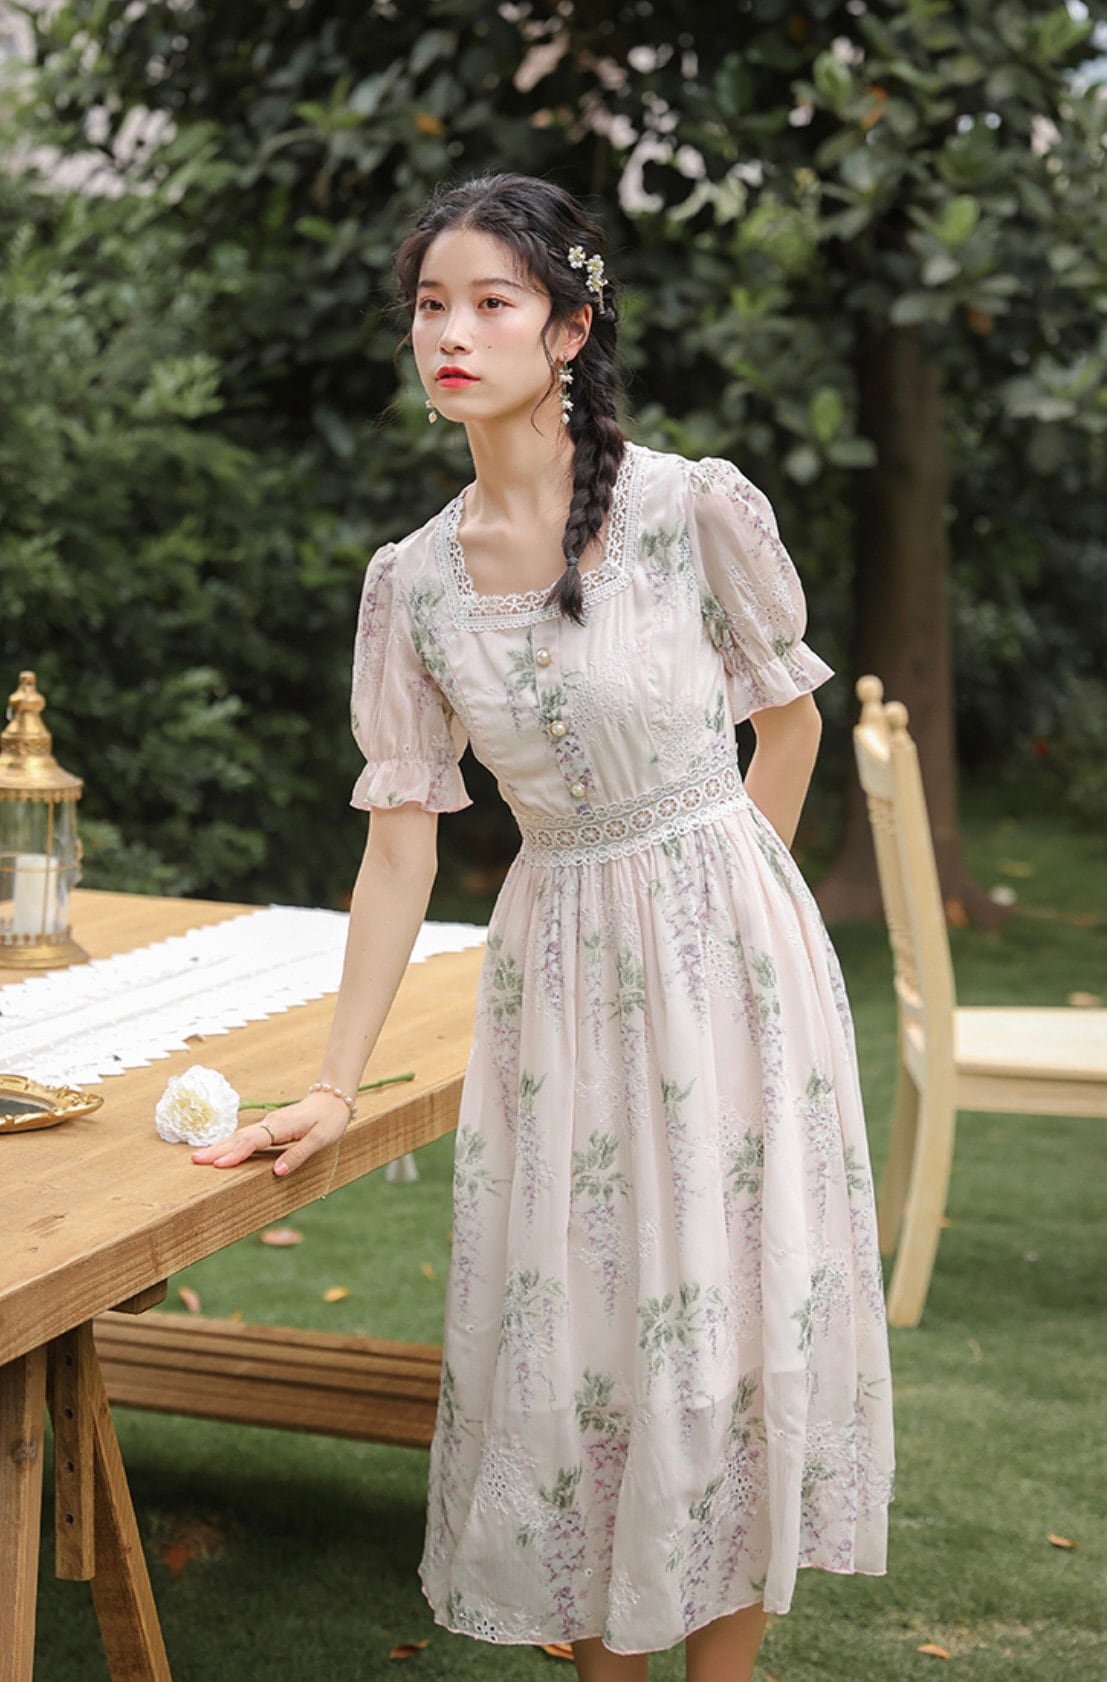 Floral Print Dress-Cottage Core Dress-Vintage Lace | Etsy